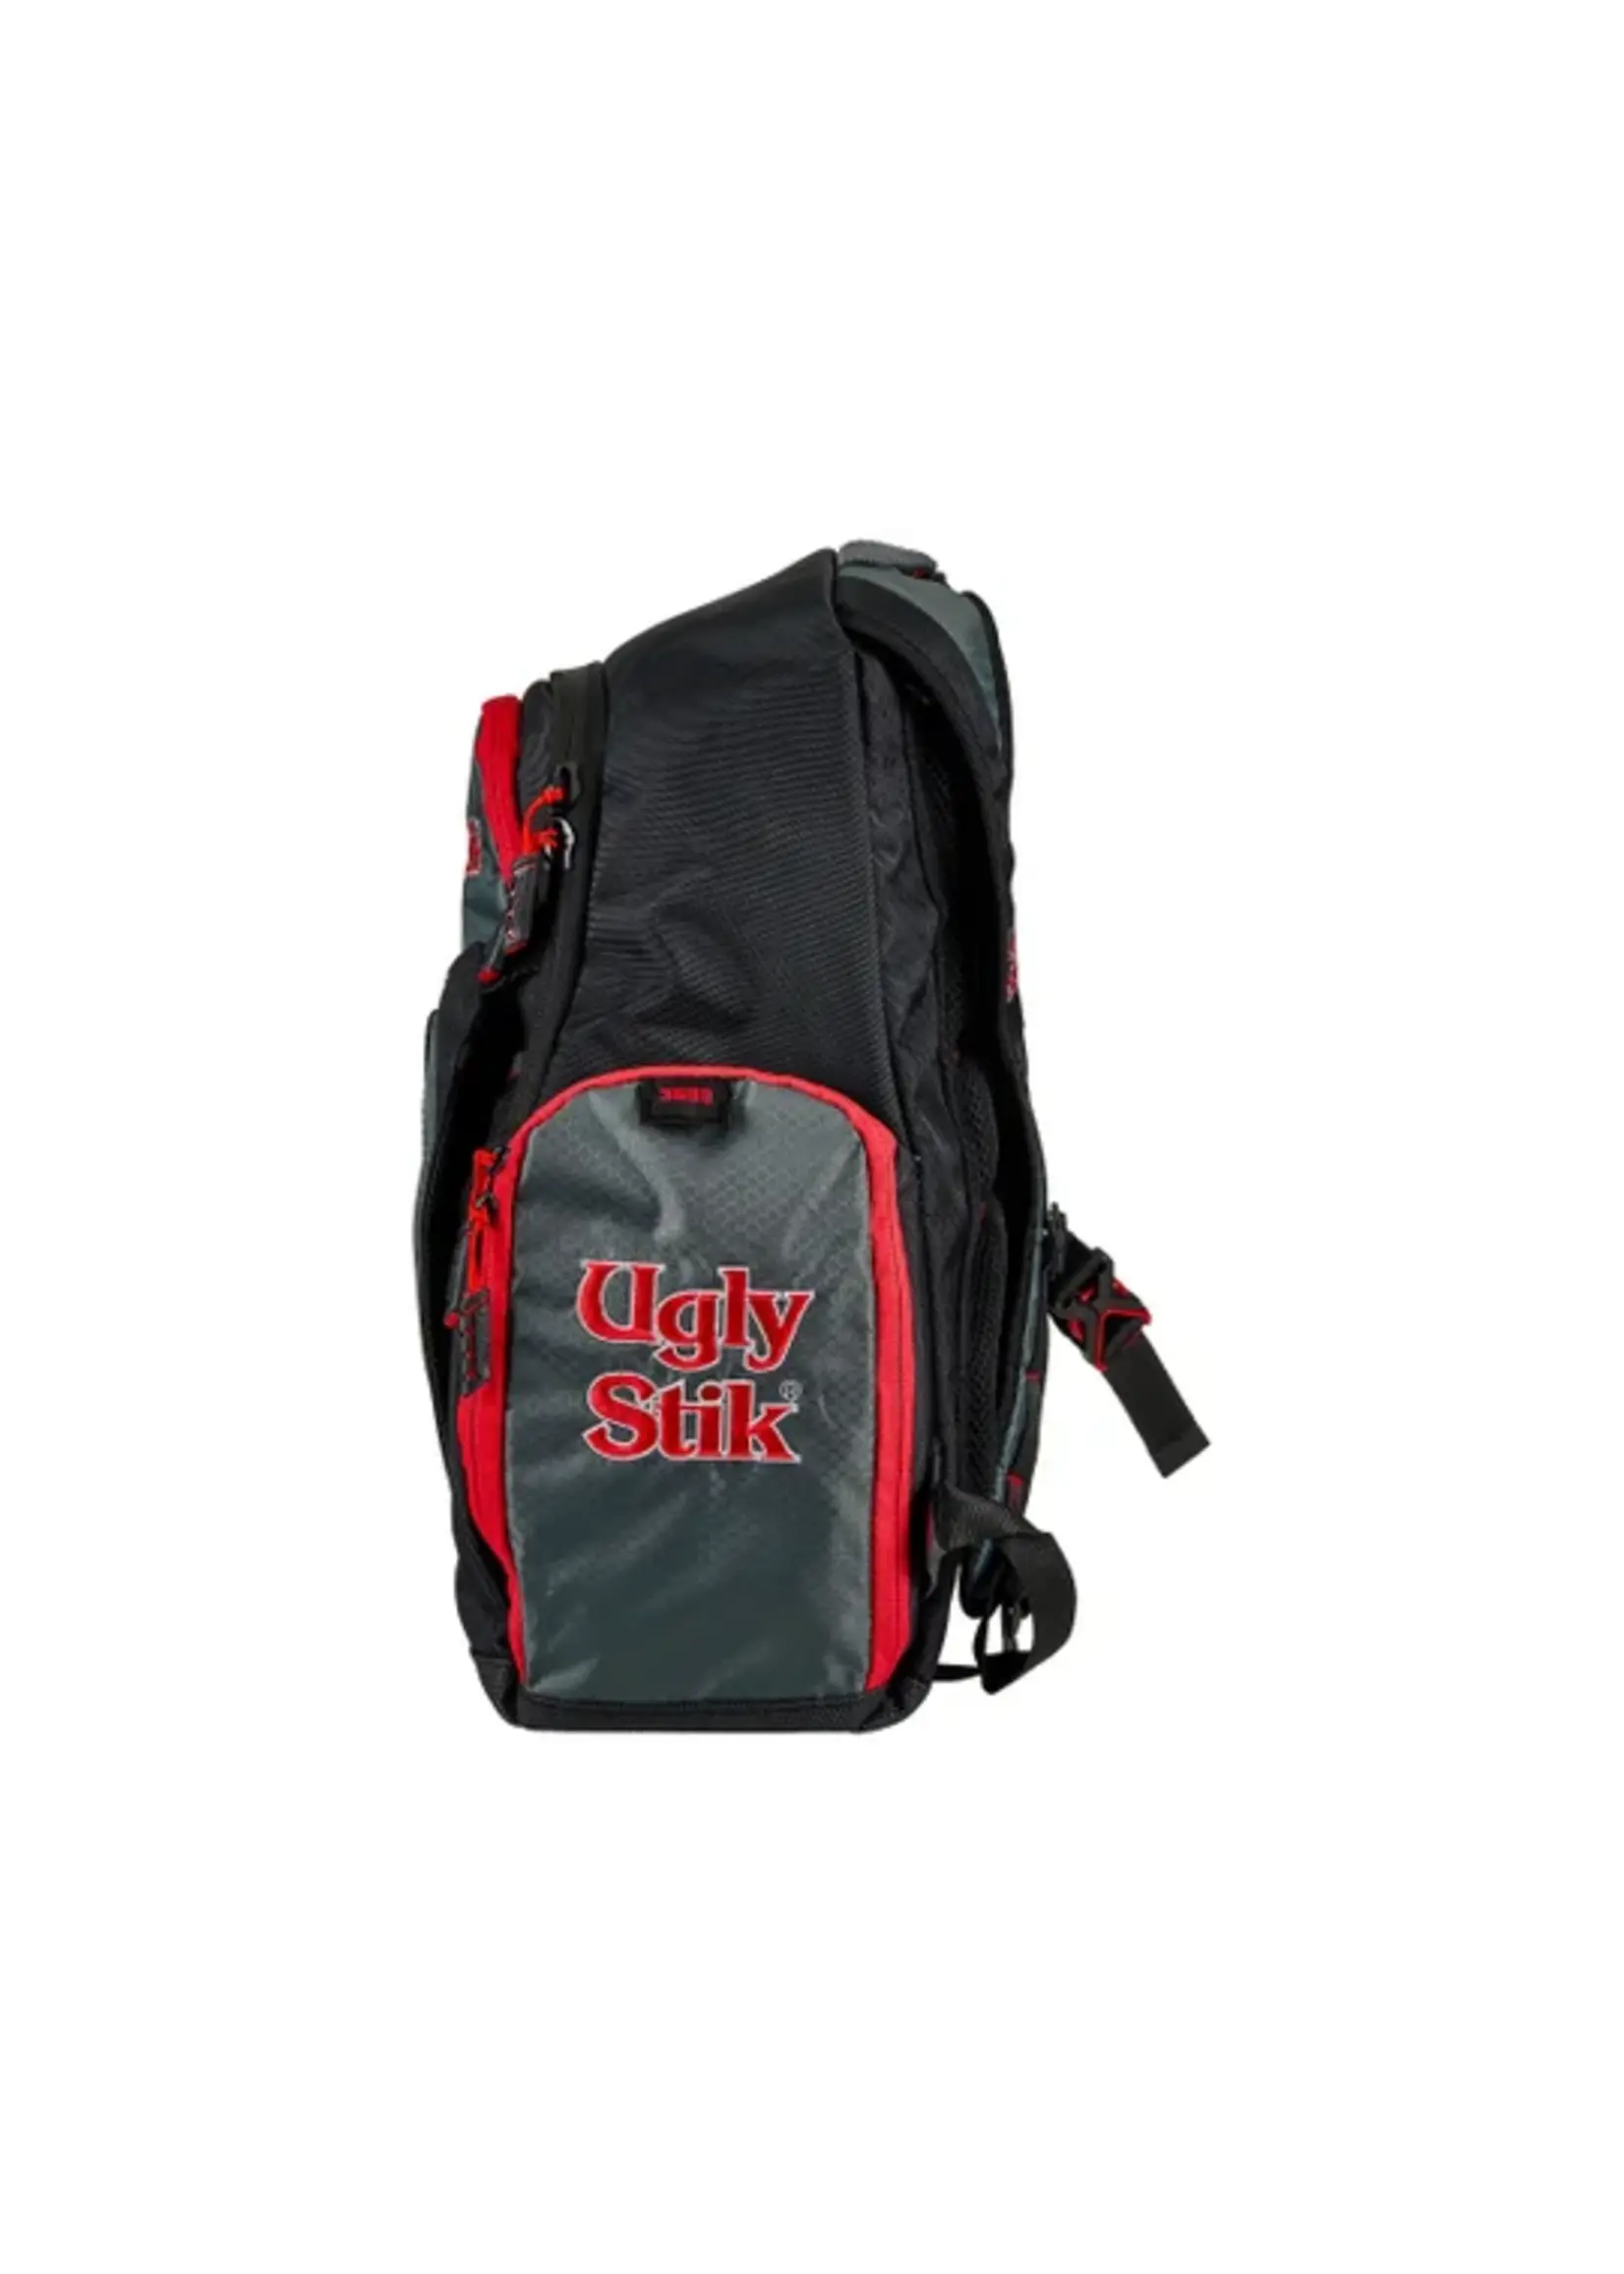 Ugly Stik 3600 Backpack - Tackle Shack